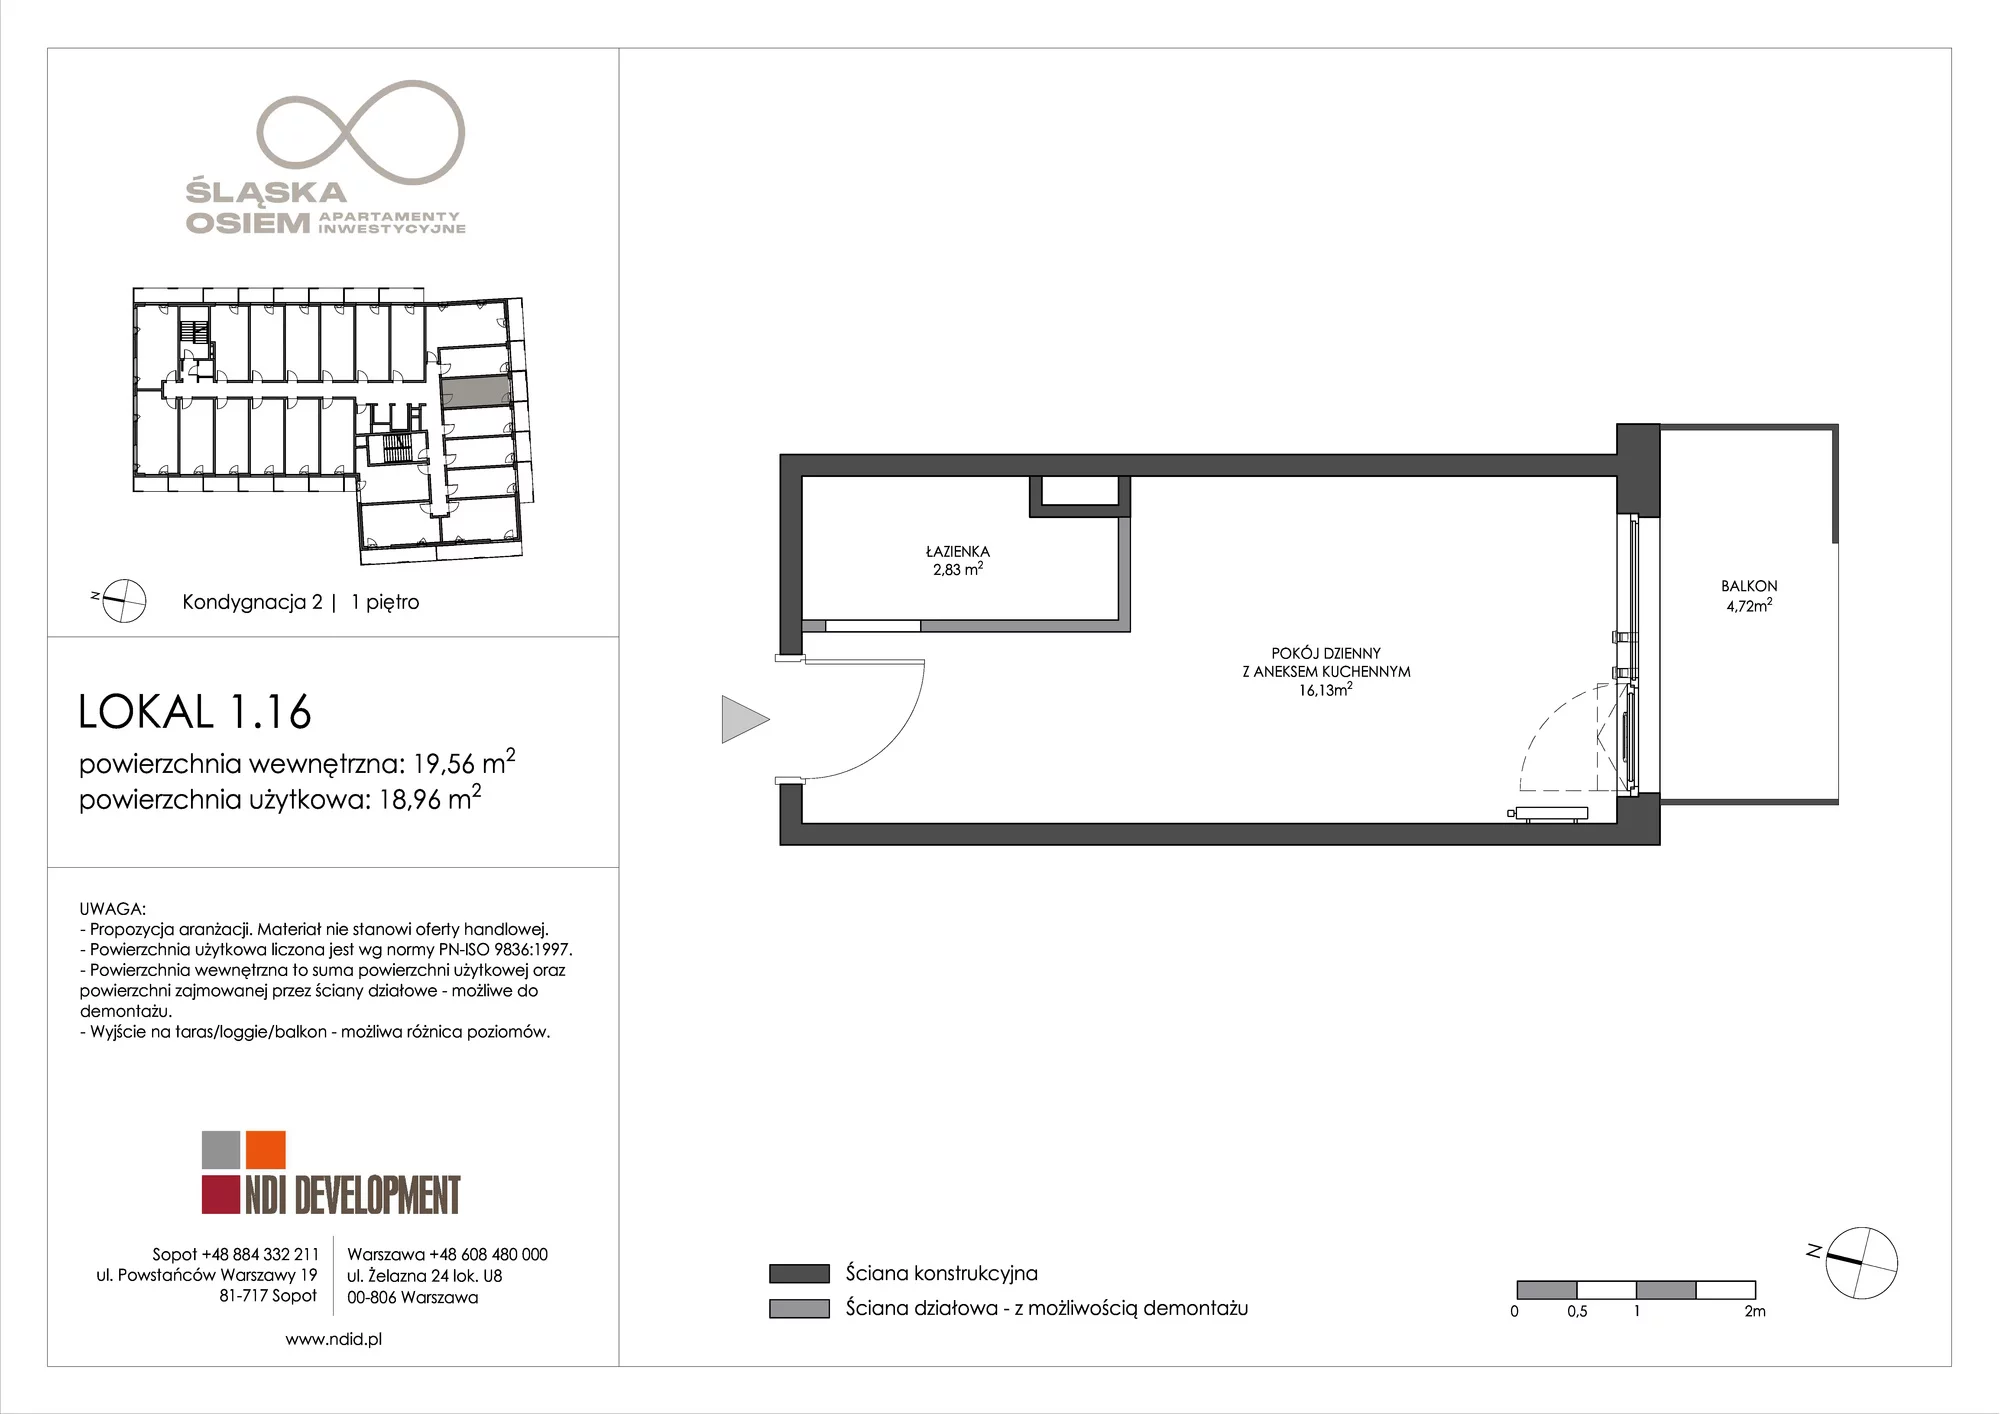 Apartament inwestycyjny 19,56 m², piętro 1, oferta nr 1.16, Śląska Osiem, Gdańsk, Przymorze, ul. Śląska 8